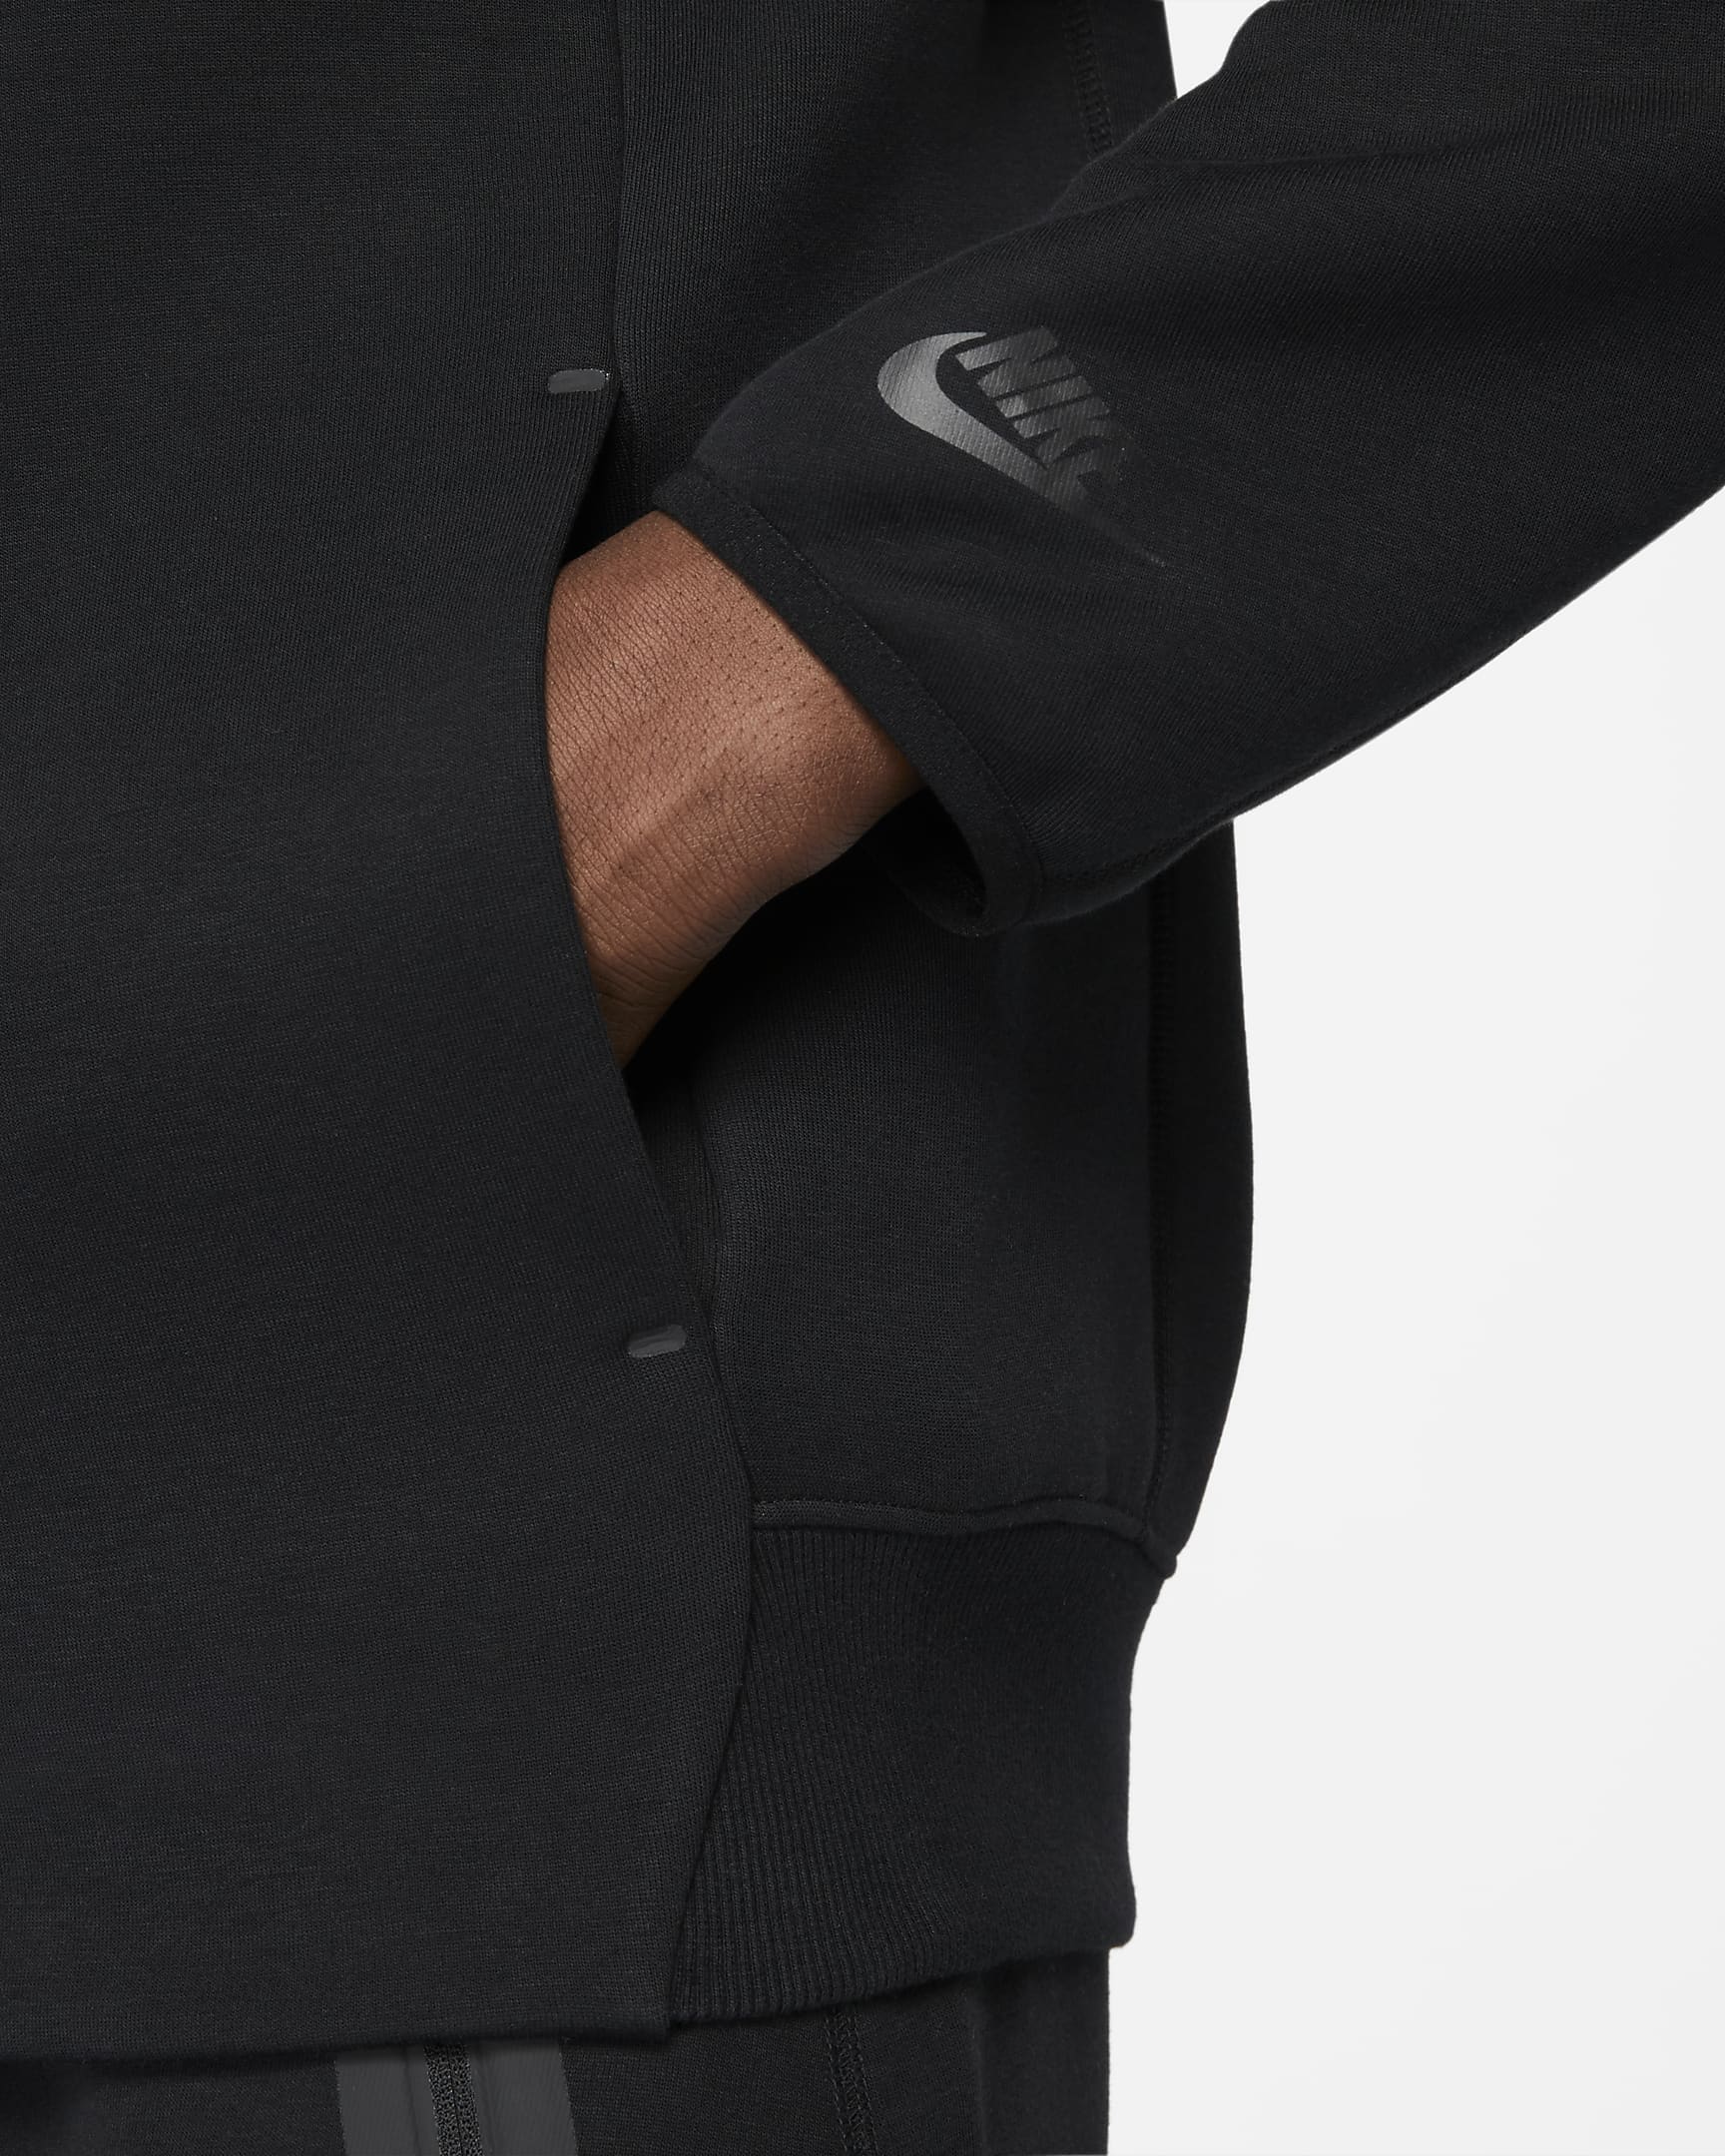 Nike Sportswear Tech Fleece Men's Bomber Jacket - Black/Black